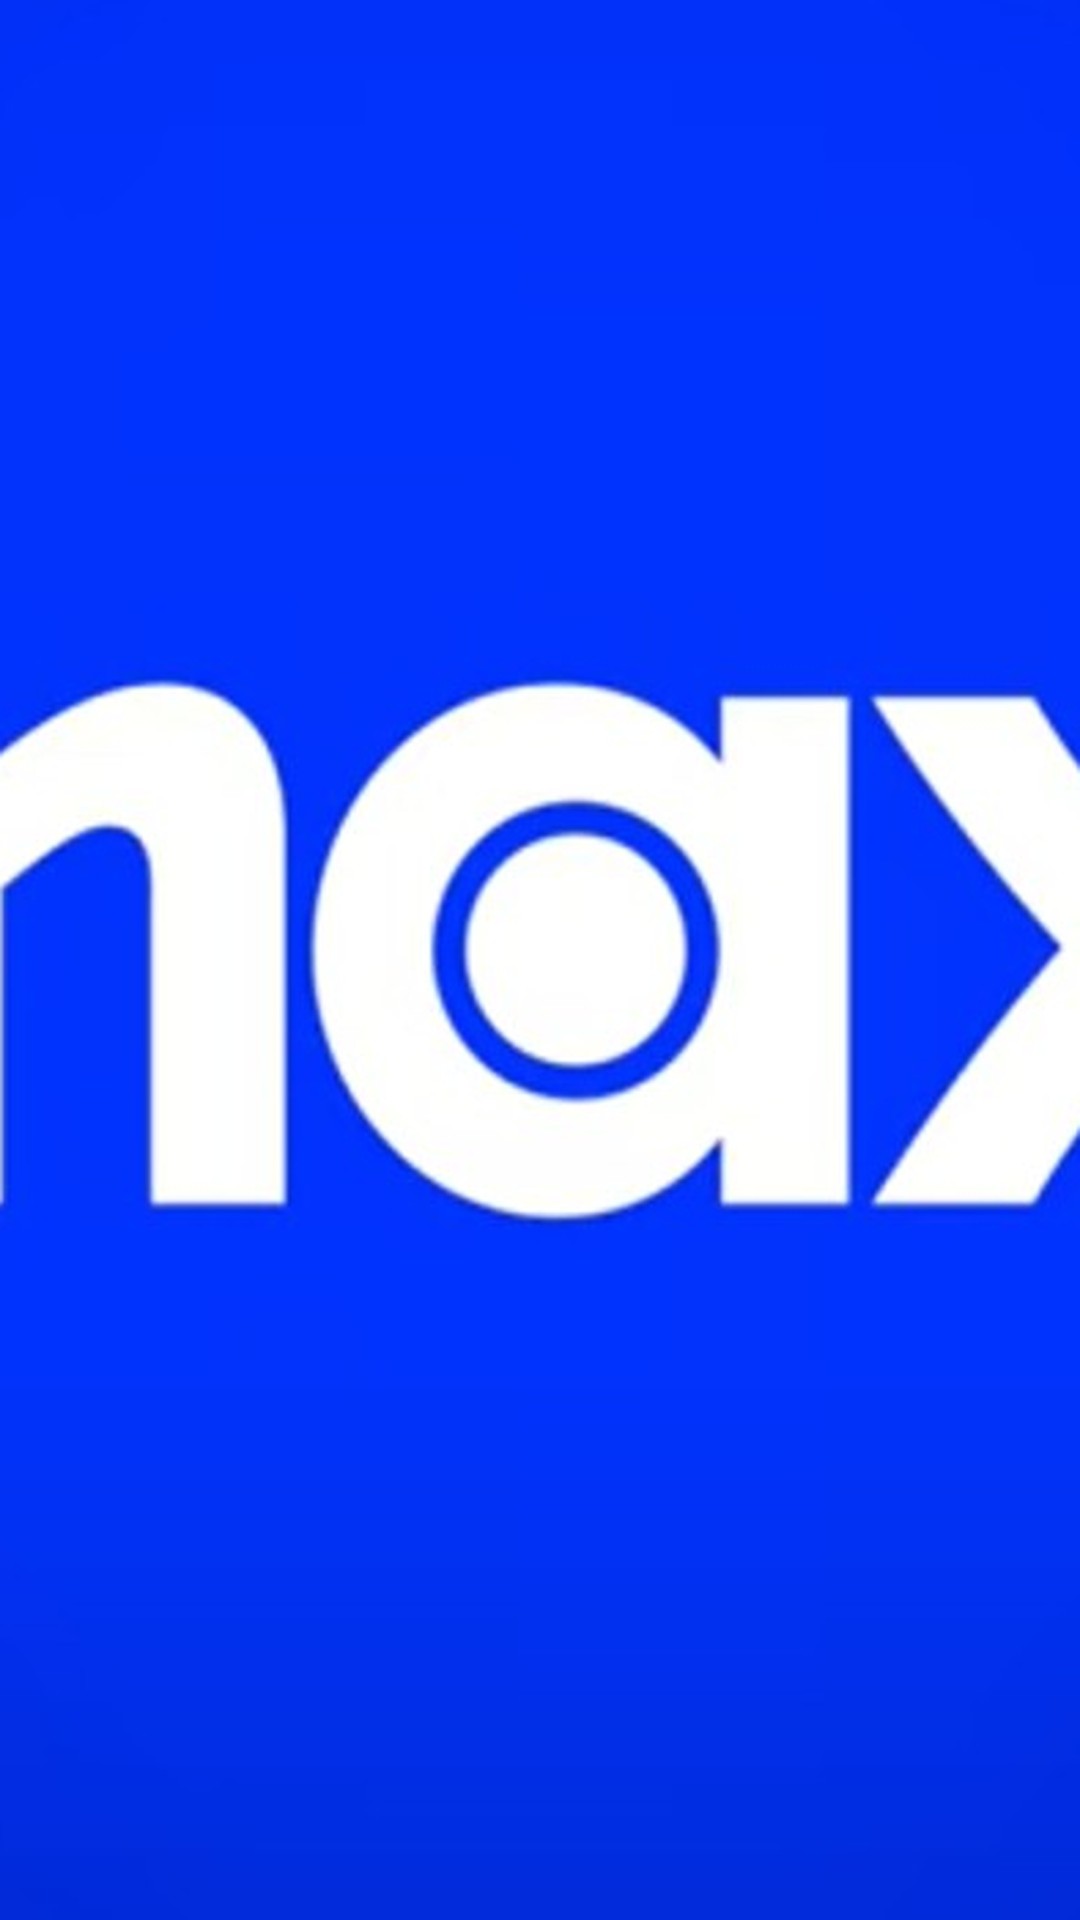 Max, novo streaming da Warner, ganha nova previsão de chegada ao